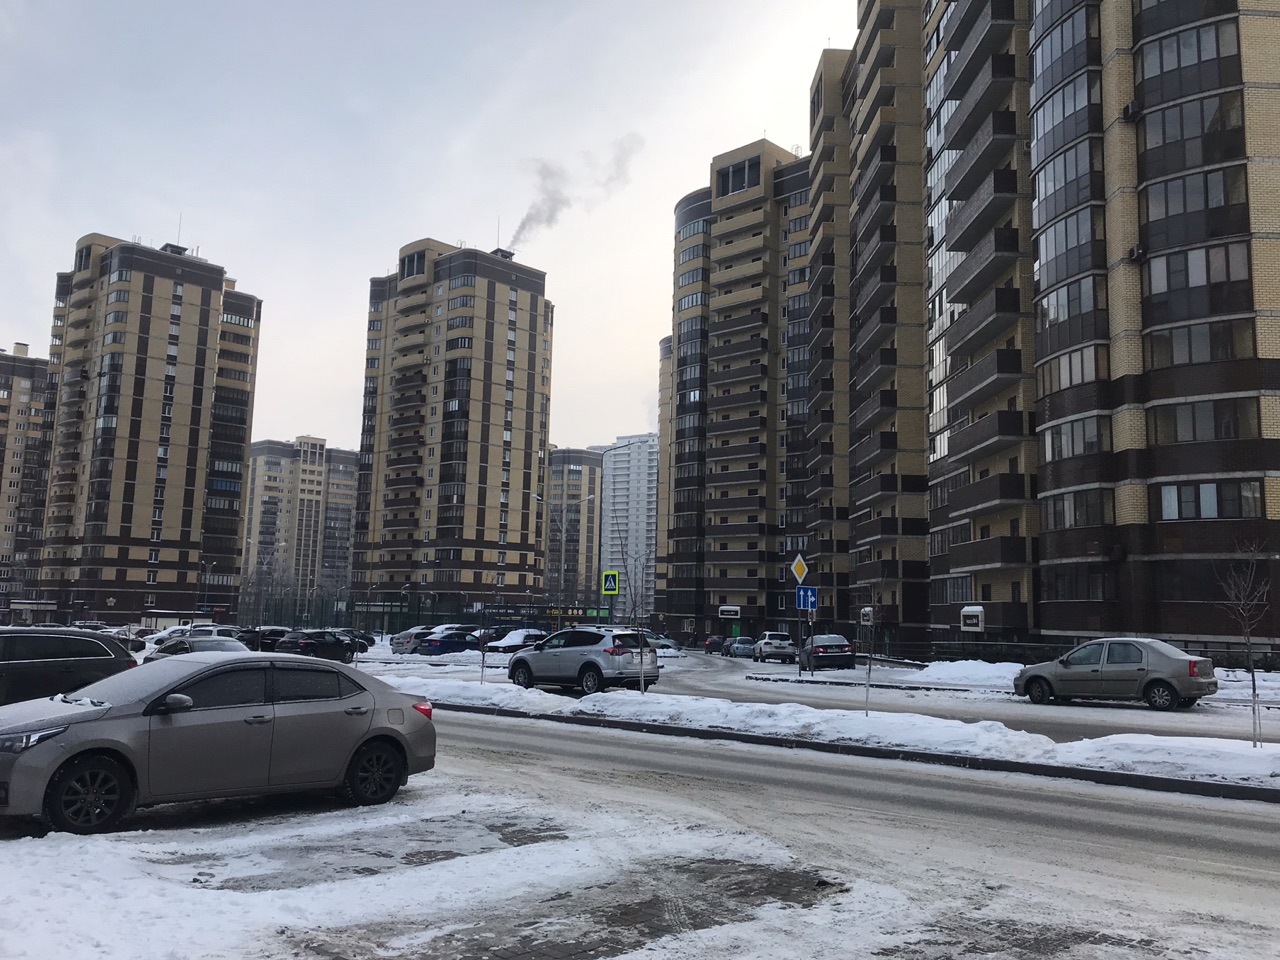 Нижний Новгород вошел в десятку городов с самым выгодным жильем для инвестиций - фото 1